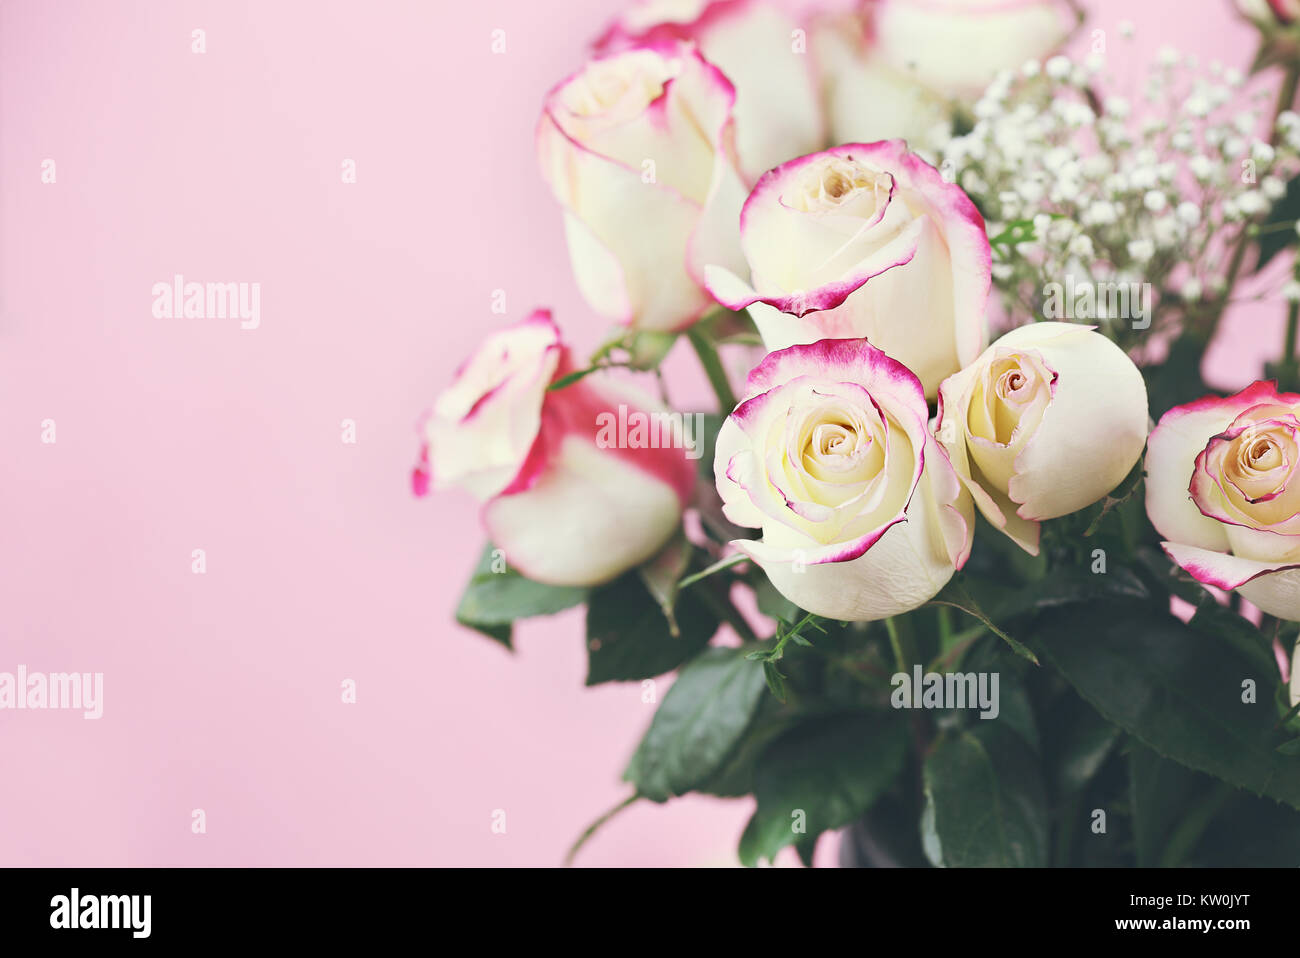 Schönen Blumenstrauß aus roten und weißen Rosen mit Baby's Atem vor einem rosa Hintergrund. Selektiver Fokus auf Rosen im Vordergrund mit extrem flachen de Stockfoto